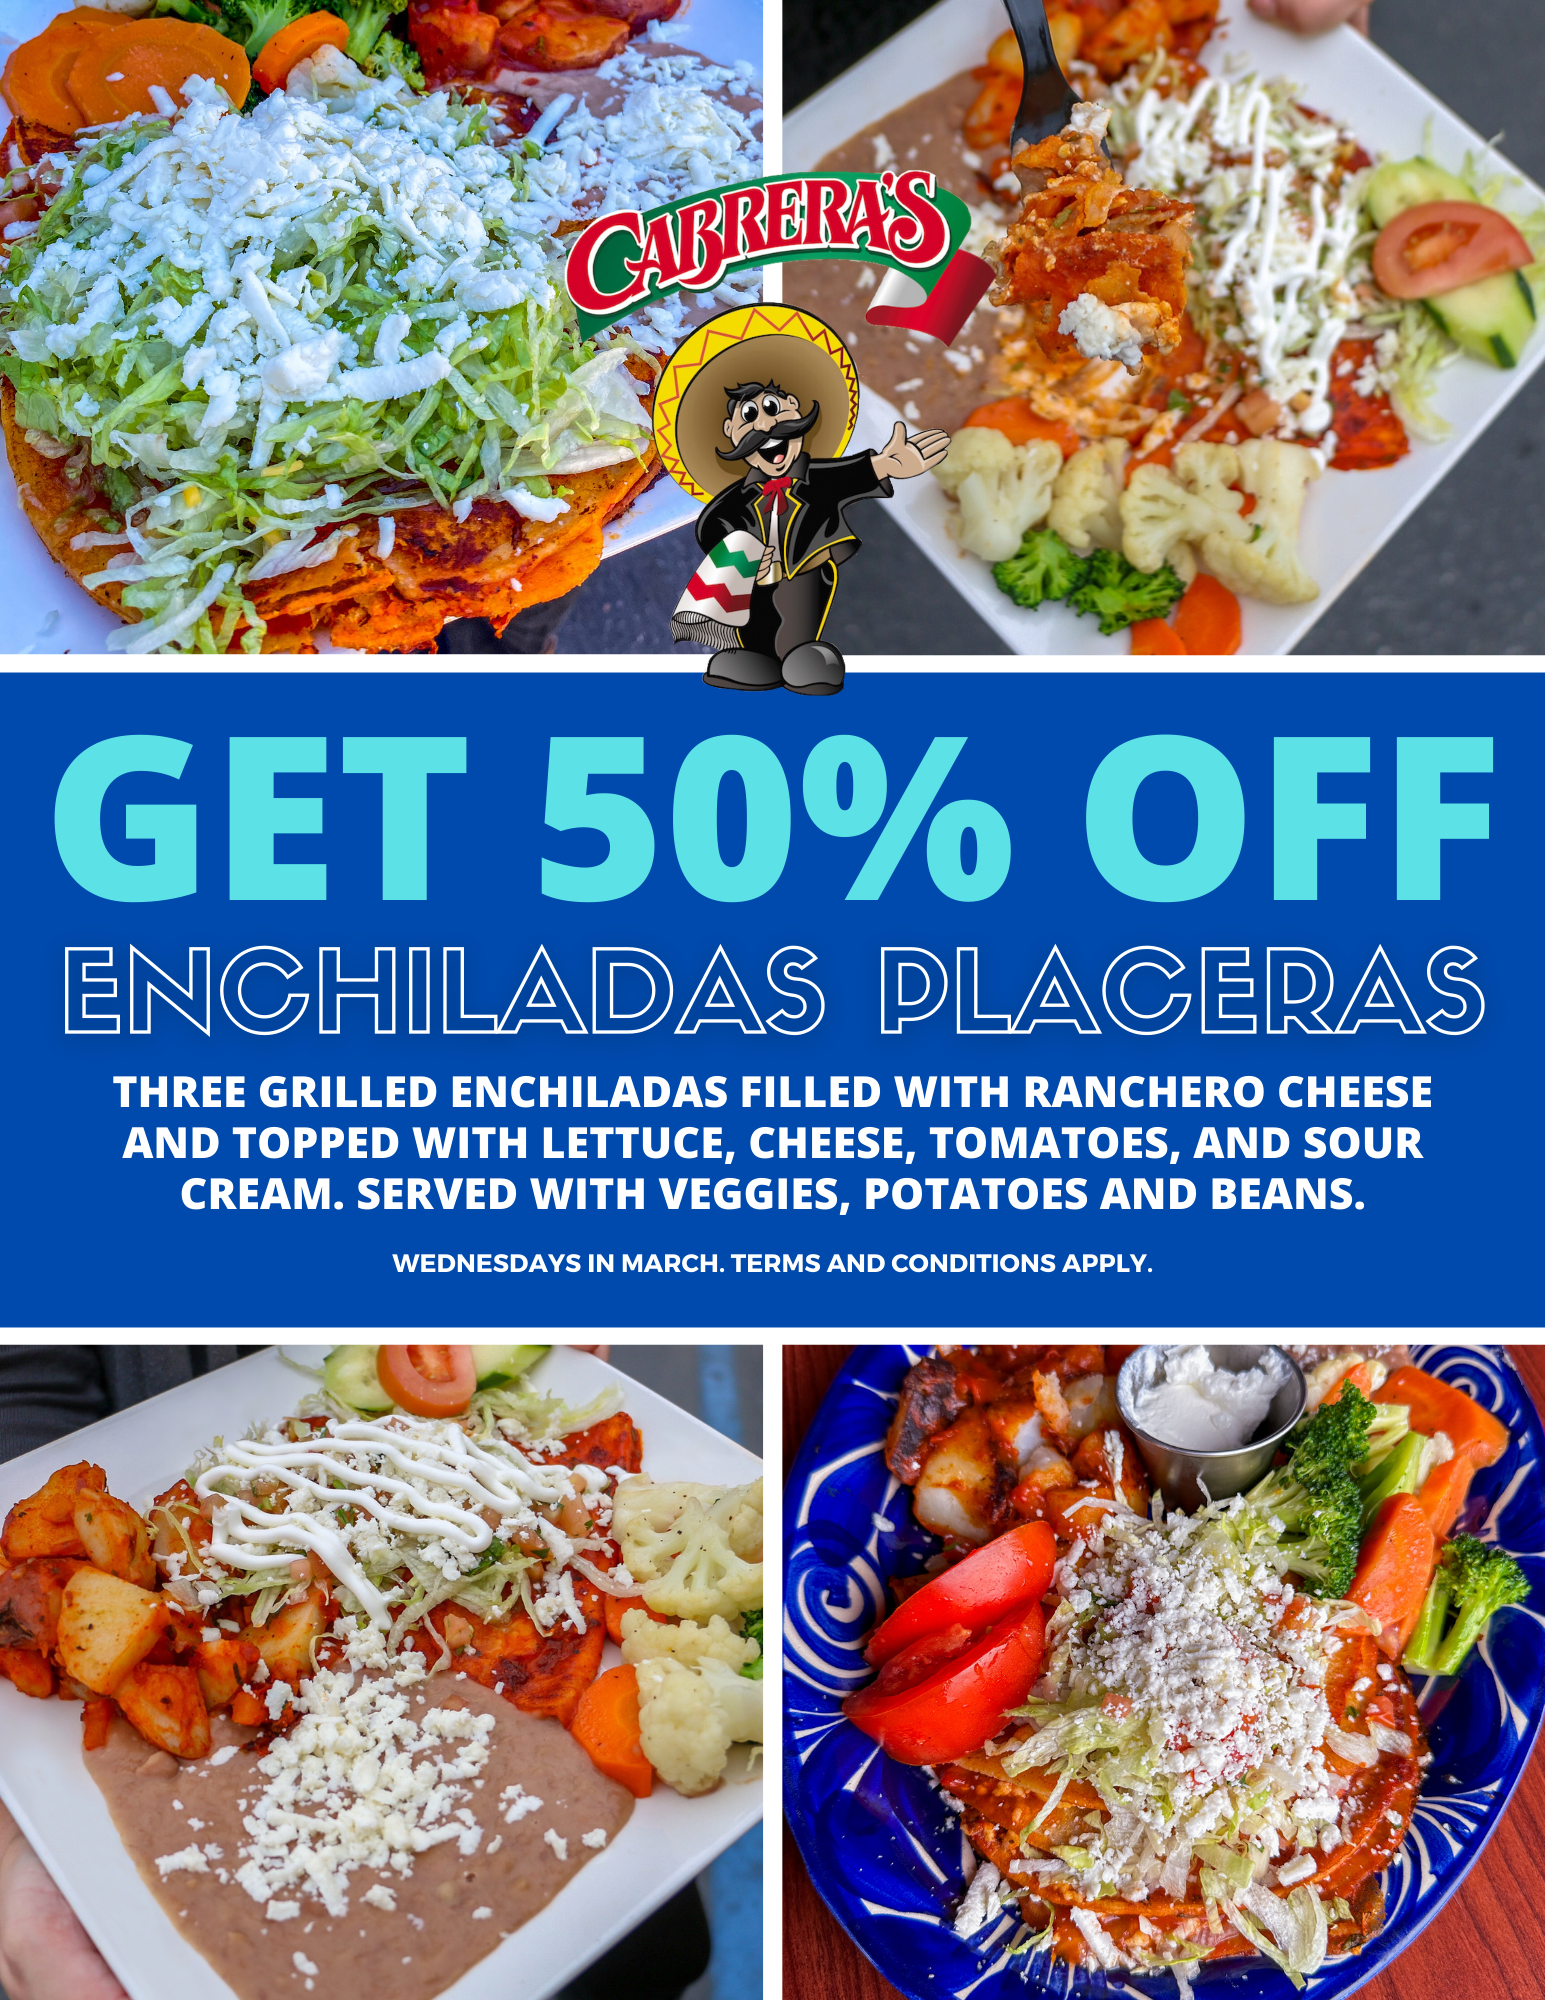 50% off enchiladas placeras at Cabrera's in March 